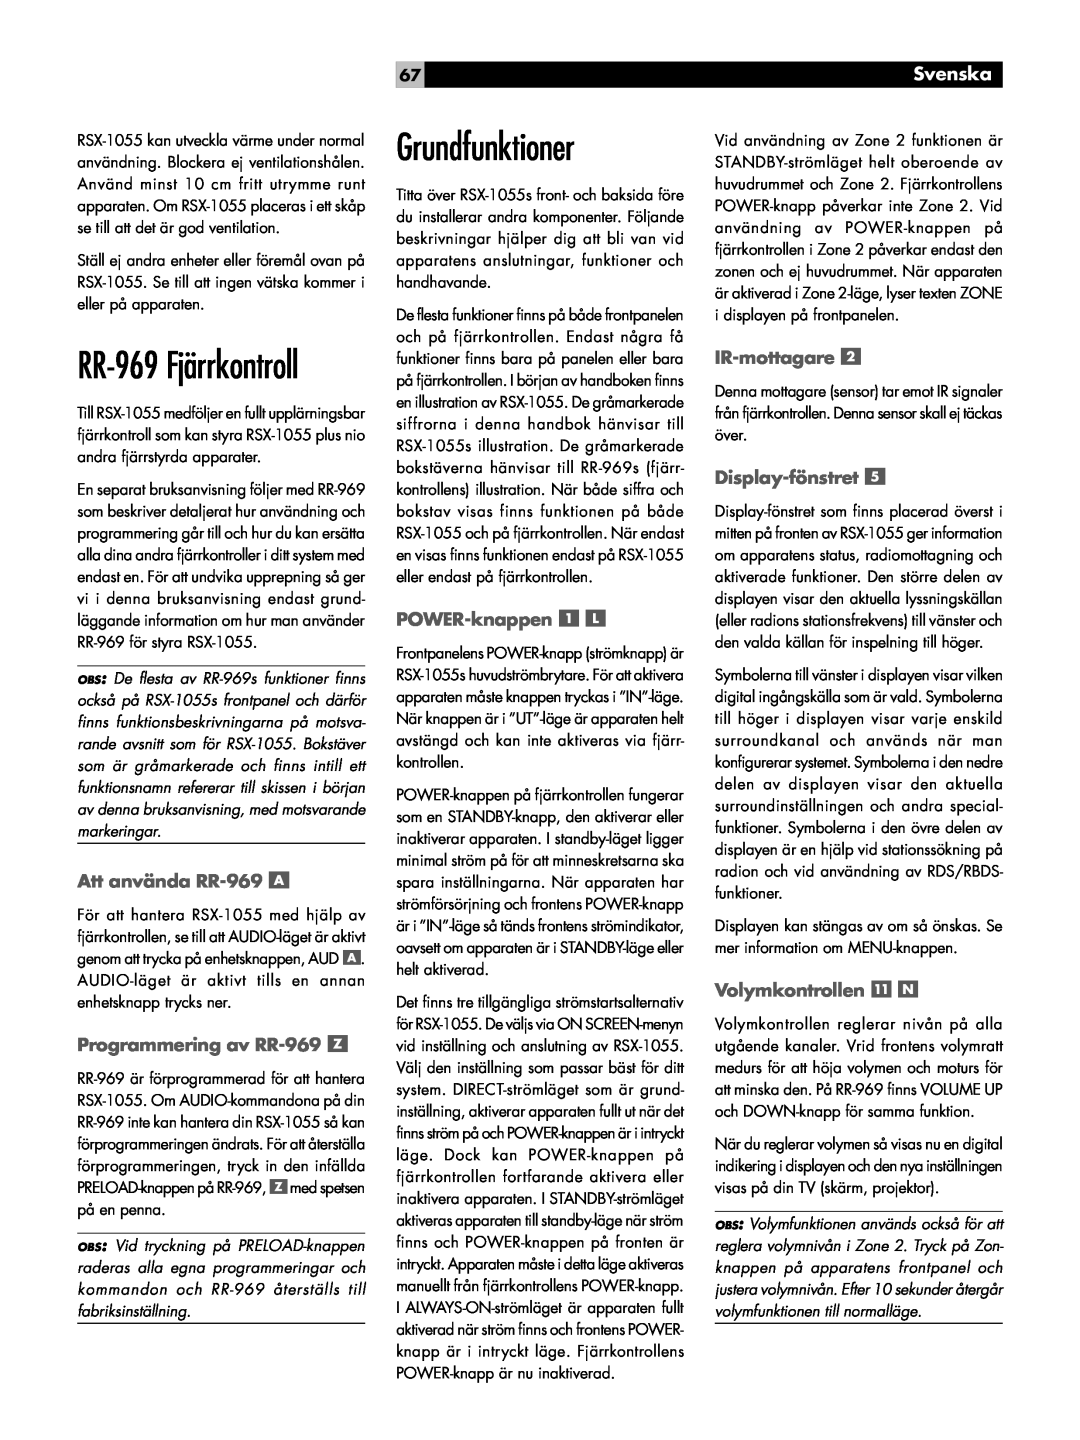 Rotel RSX-1055 Grundfunktioner, RR-969Fjärrkontroll, Att använda RR-969, Programmering av RR-969, POWER-knappen, Svenska 